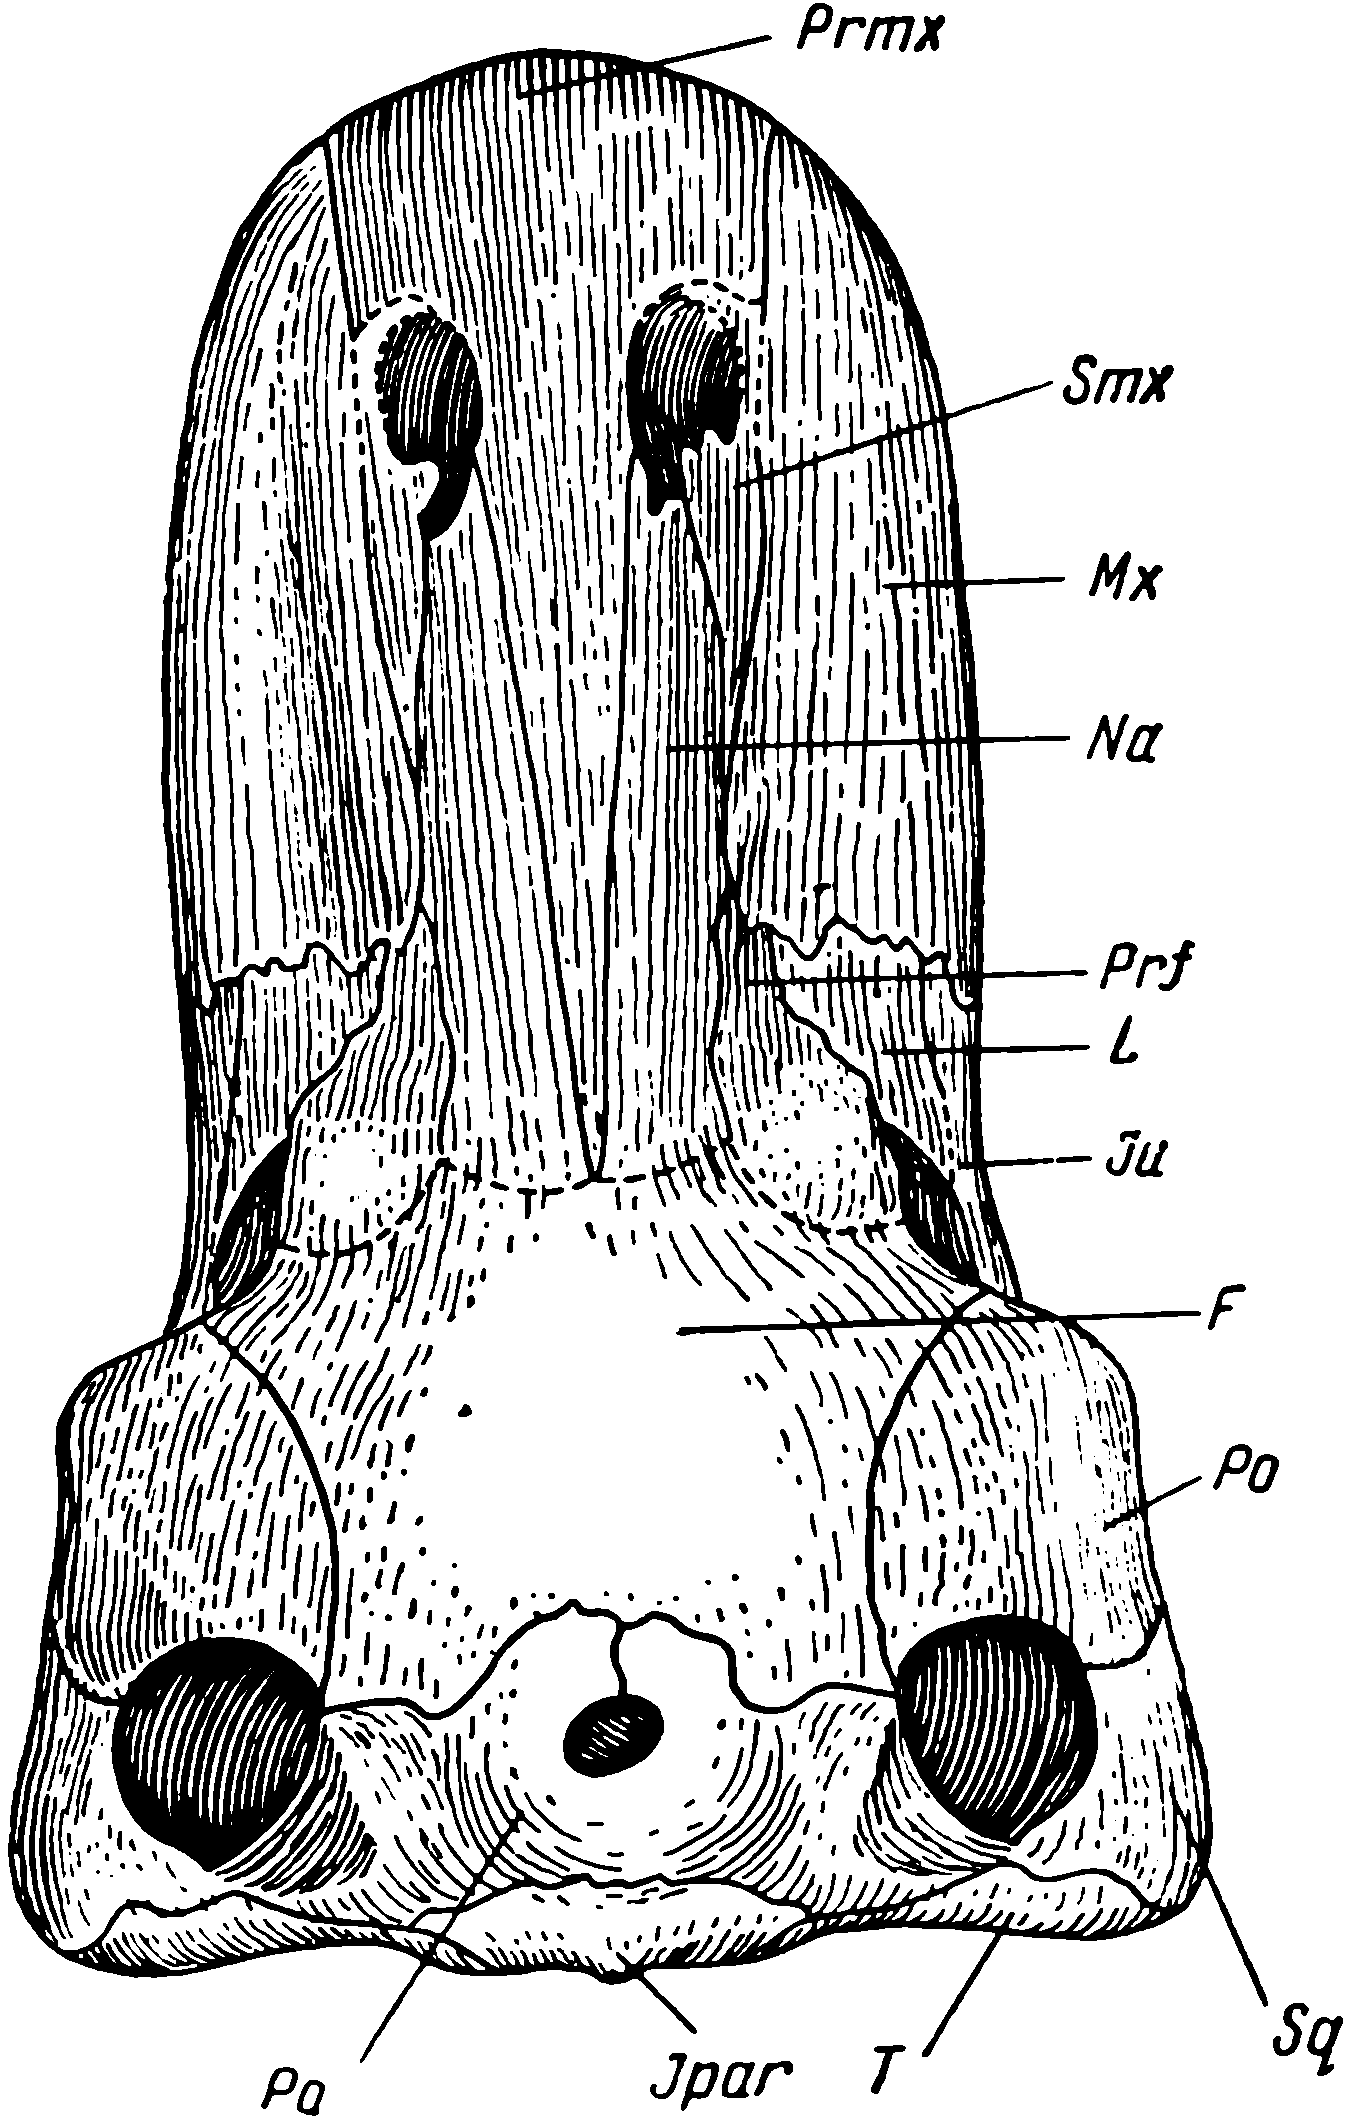 Рис. 75. Taurocephalus lerouxi Brooni. Череп, вид сверху, около ¼ натур. вел. Обозначения см. рис. 3, 47. Prmx — Praemaxillare